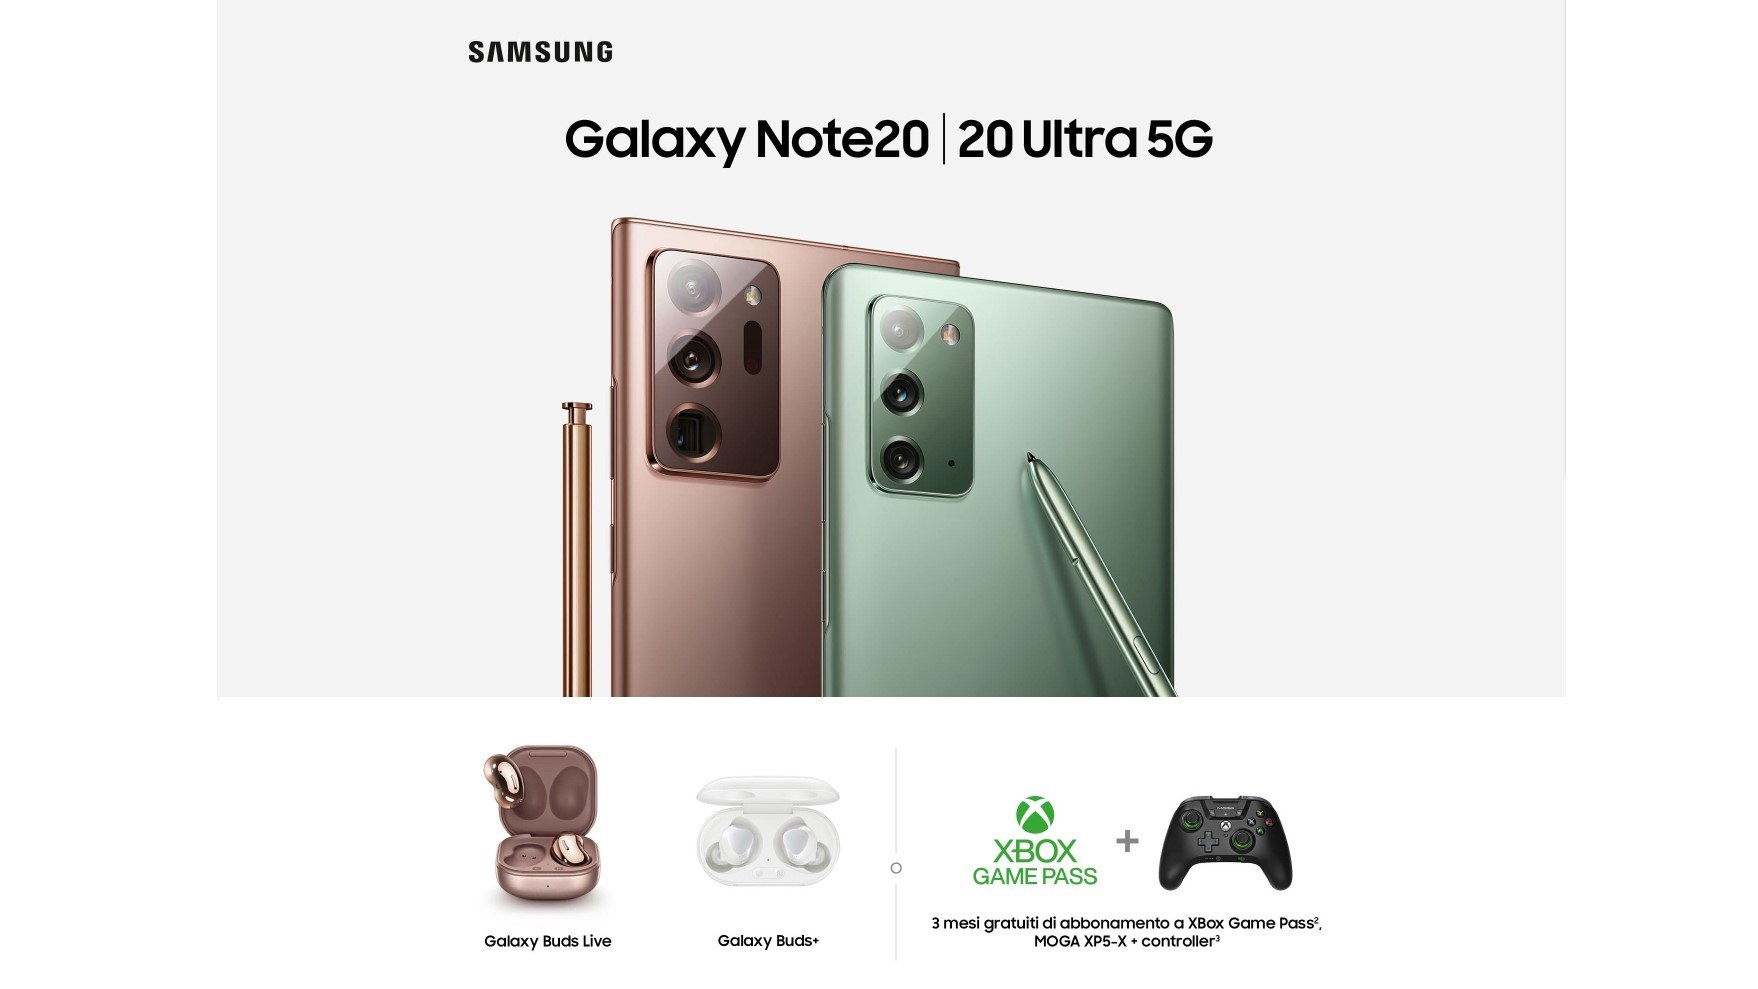 Prenota Galaxy Note20 e 20 Ultra 5G premio certo a scelta